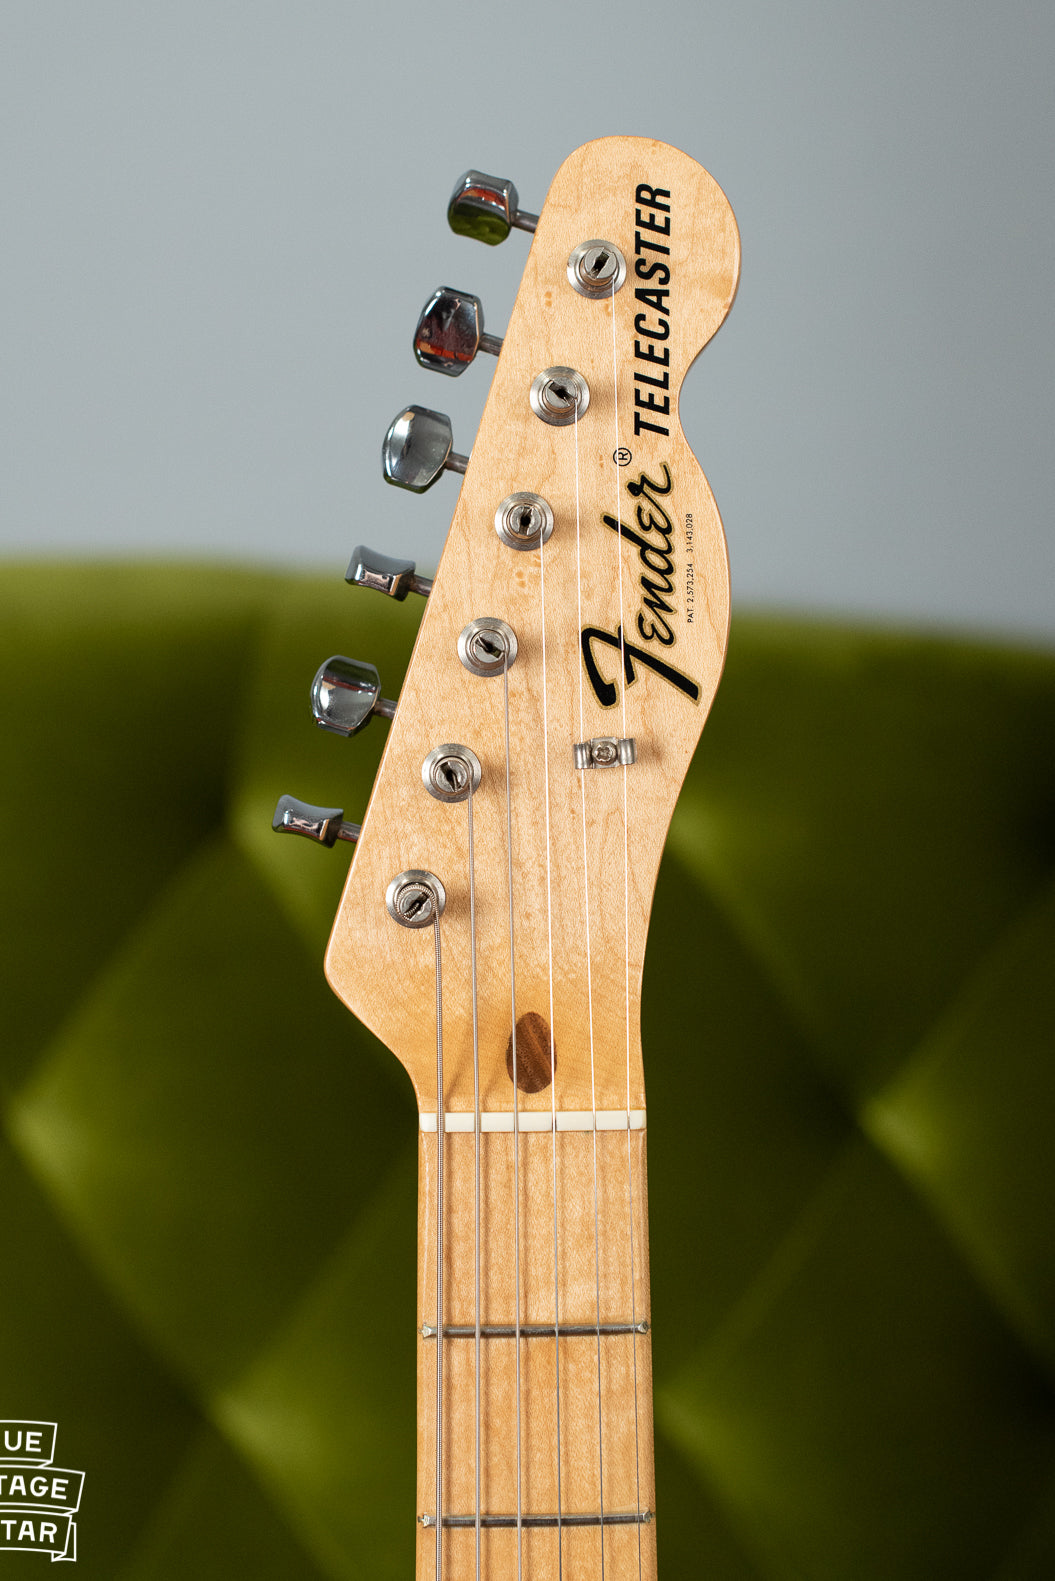 Fender Telecaster 1969 neck